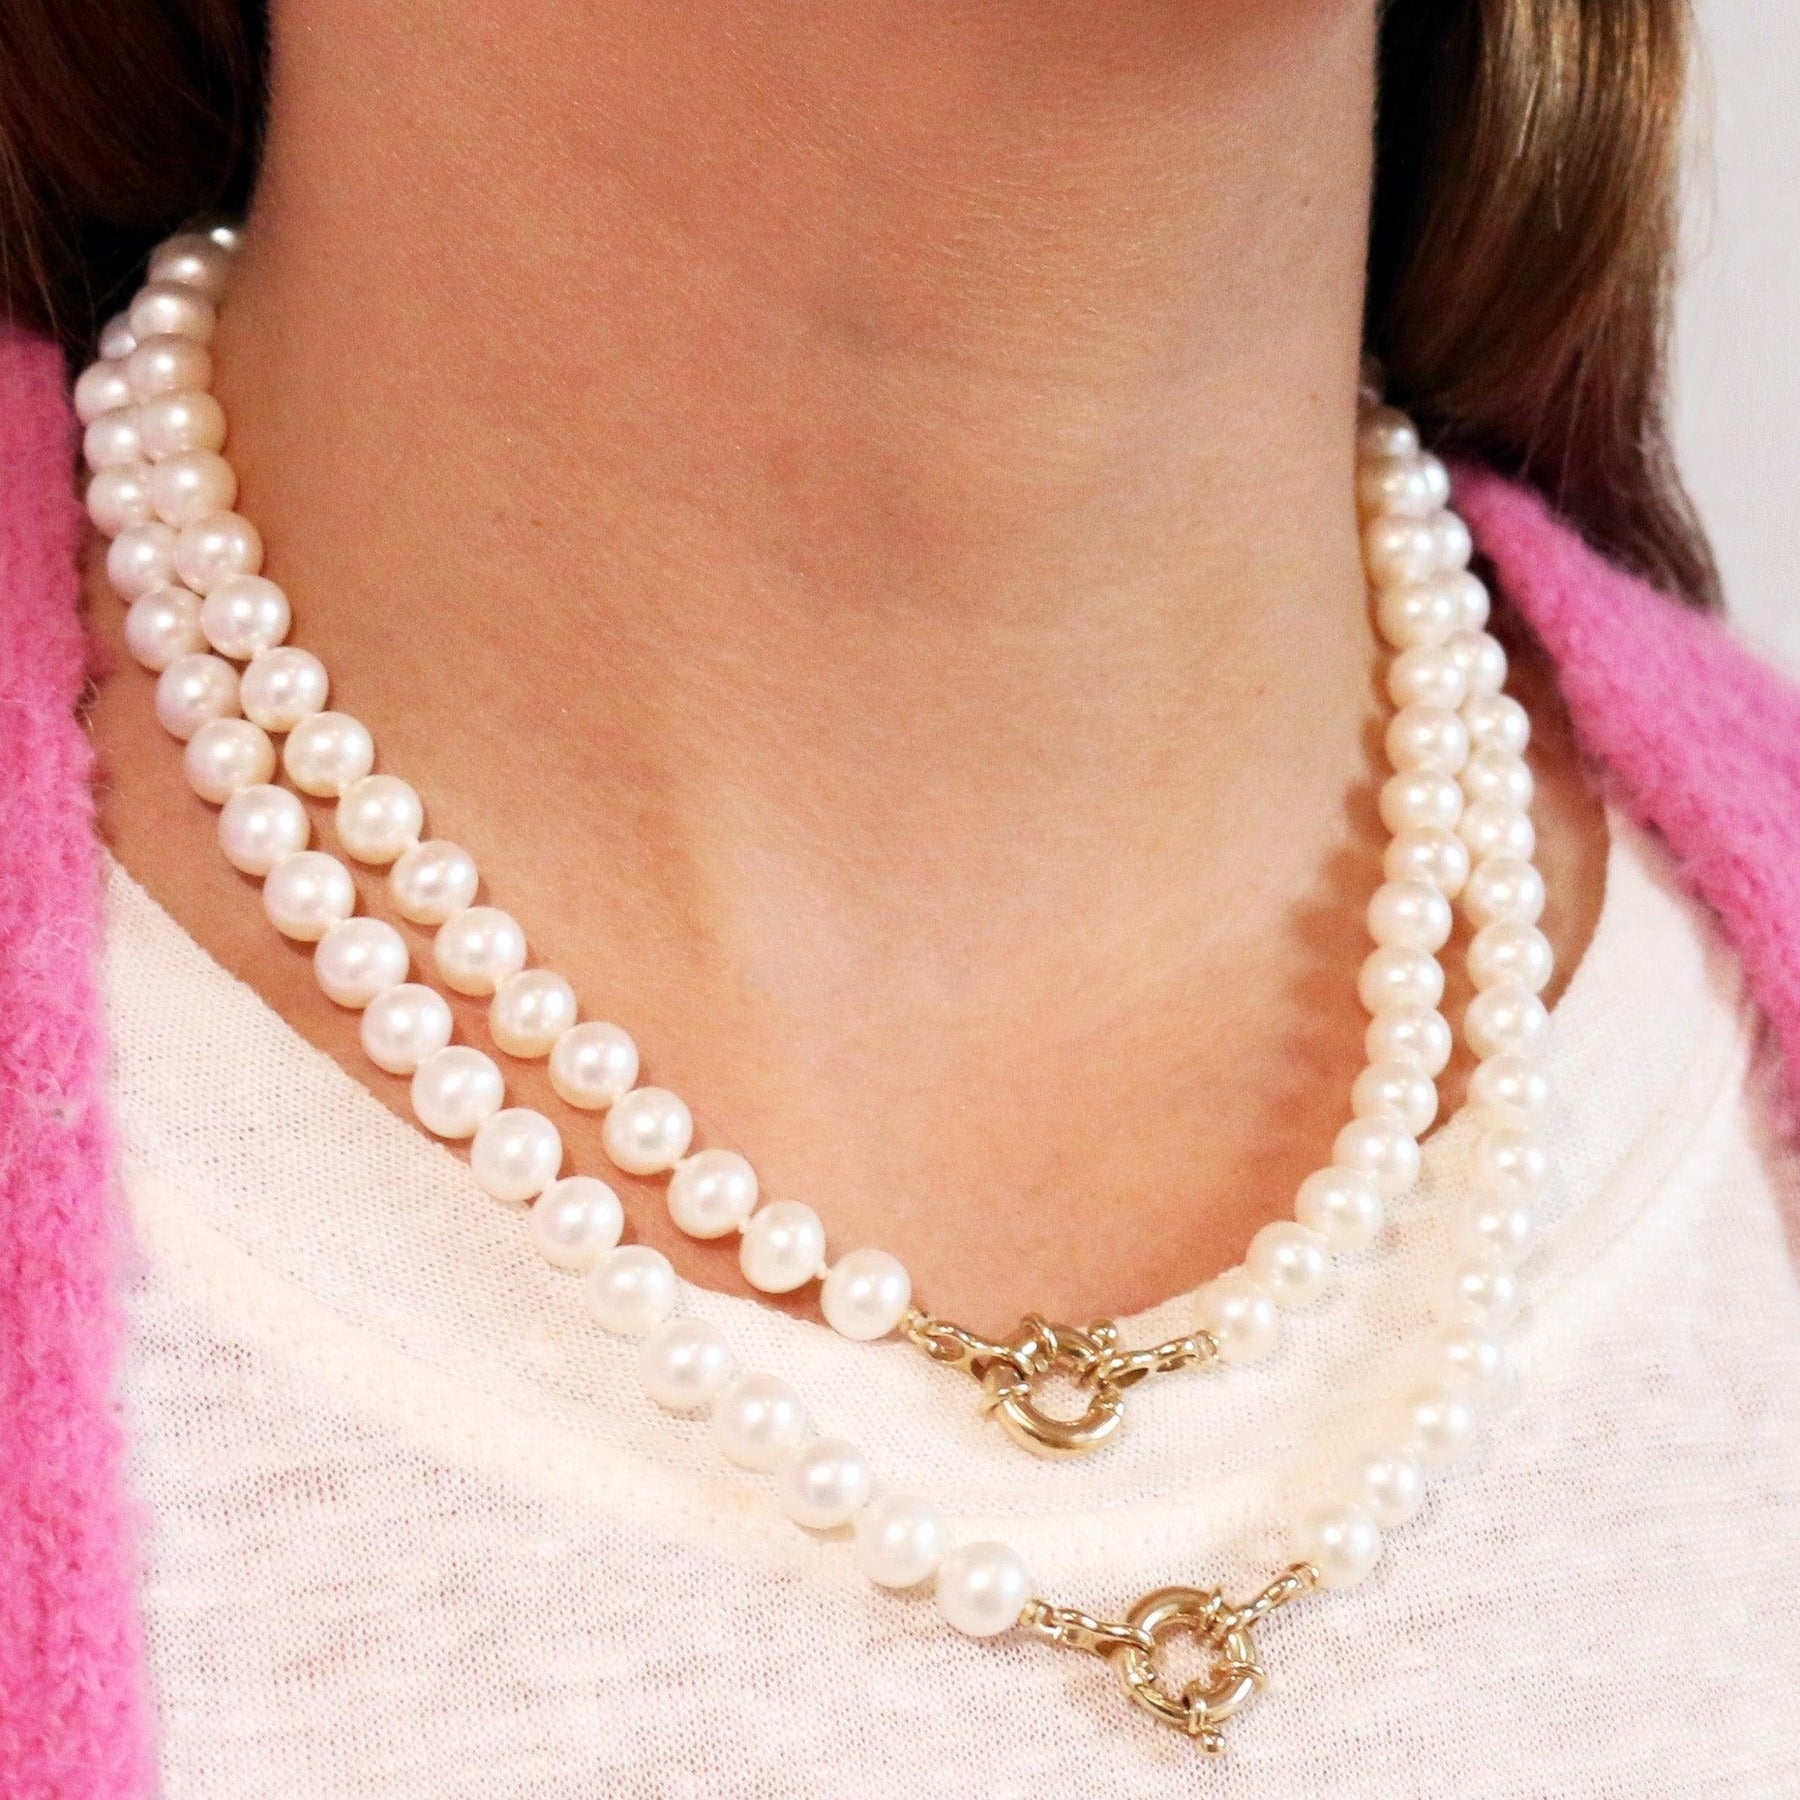 Encirkled Jewelry Freshwater Pearl Necklace 4